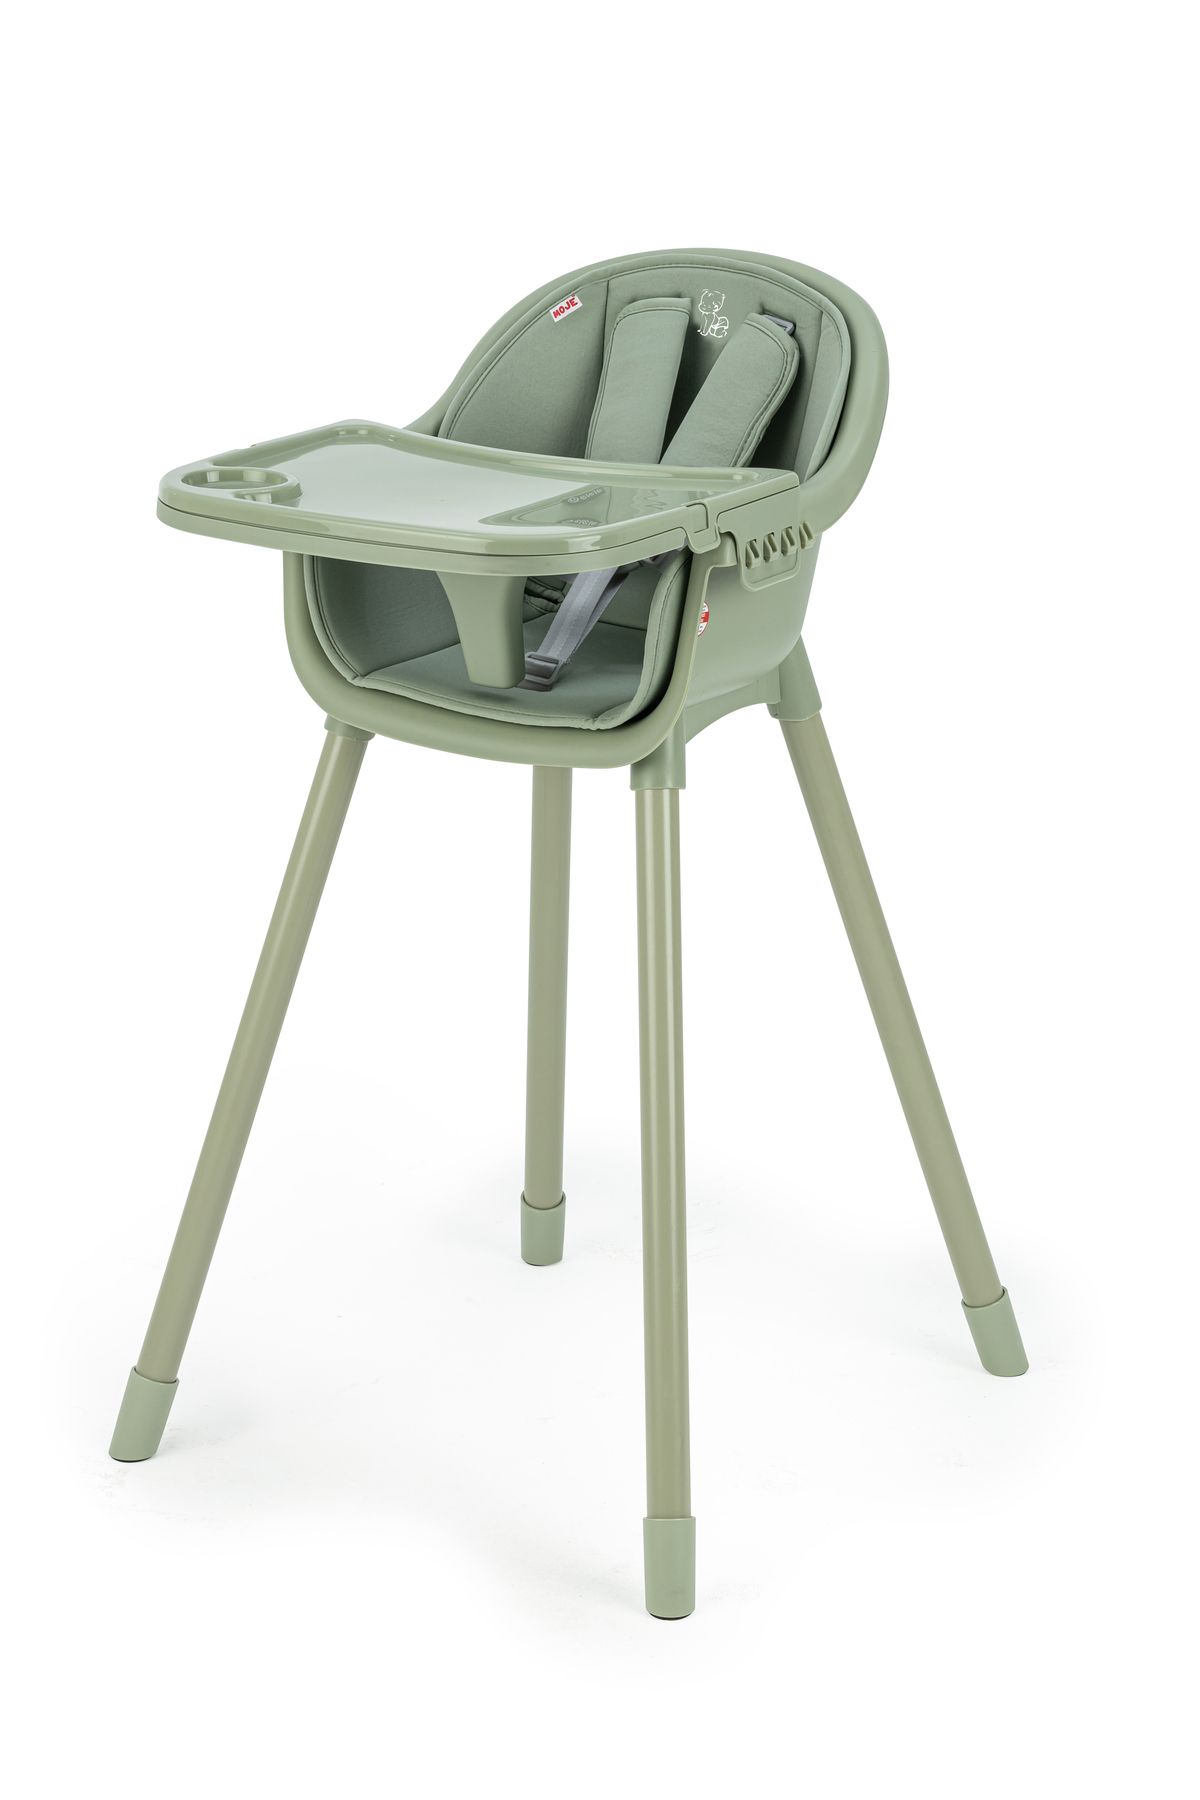 Jaju Baby Moje 4in1 Mama Sandalyesi (Yeşil)